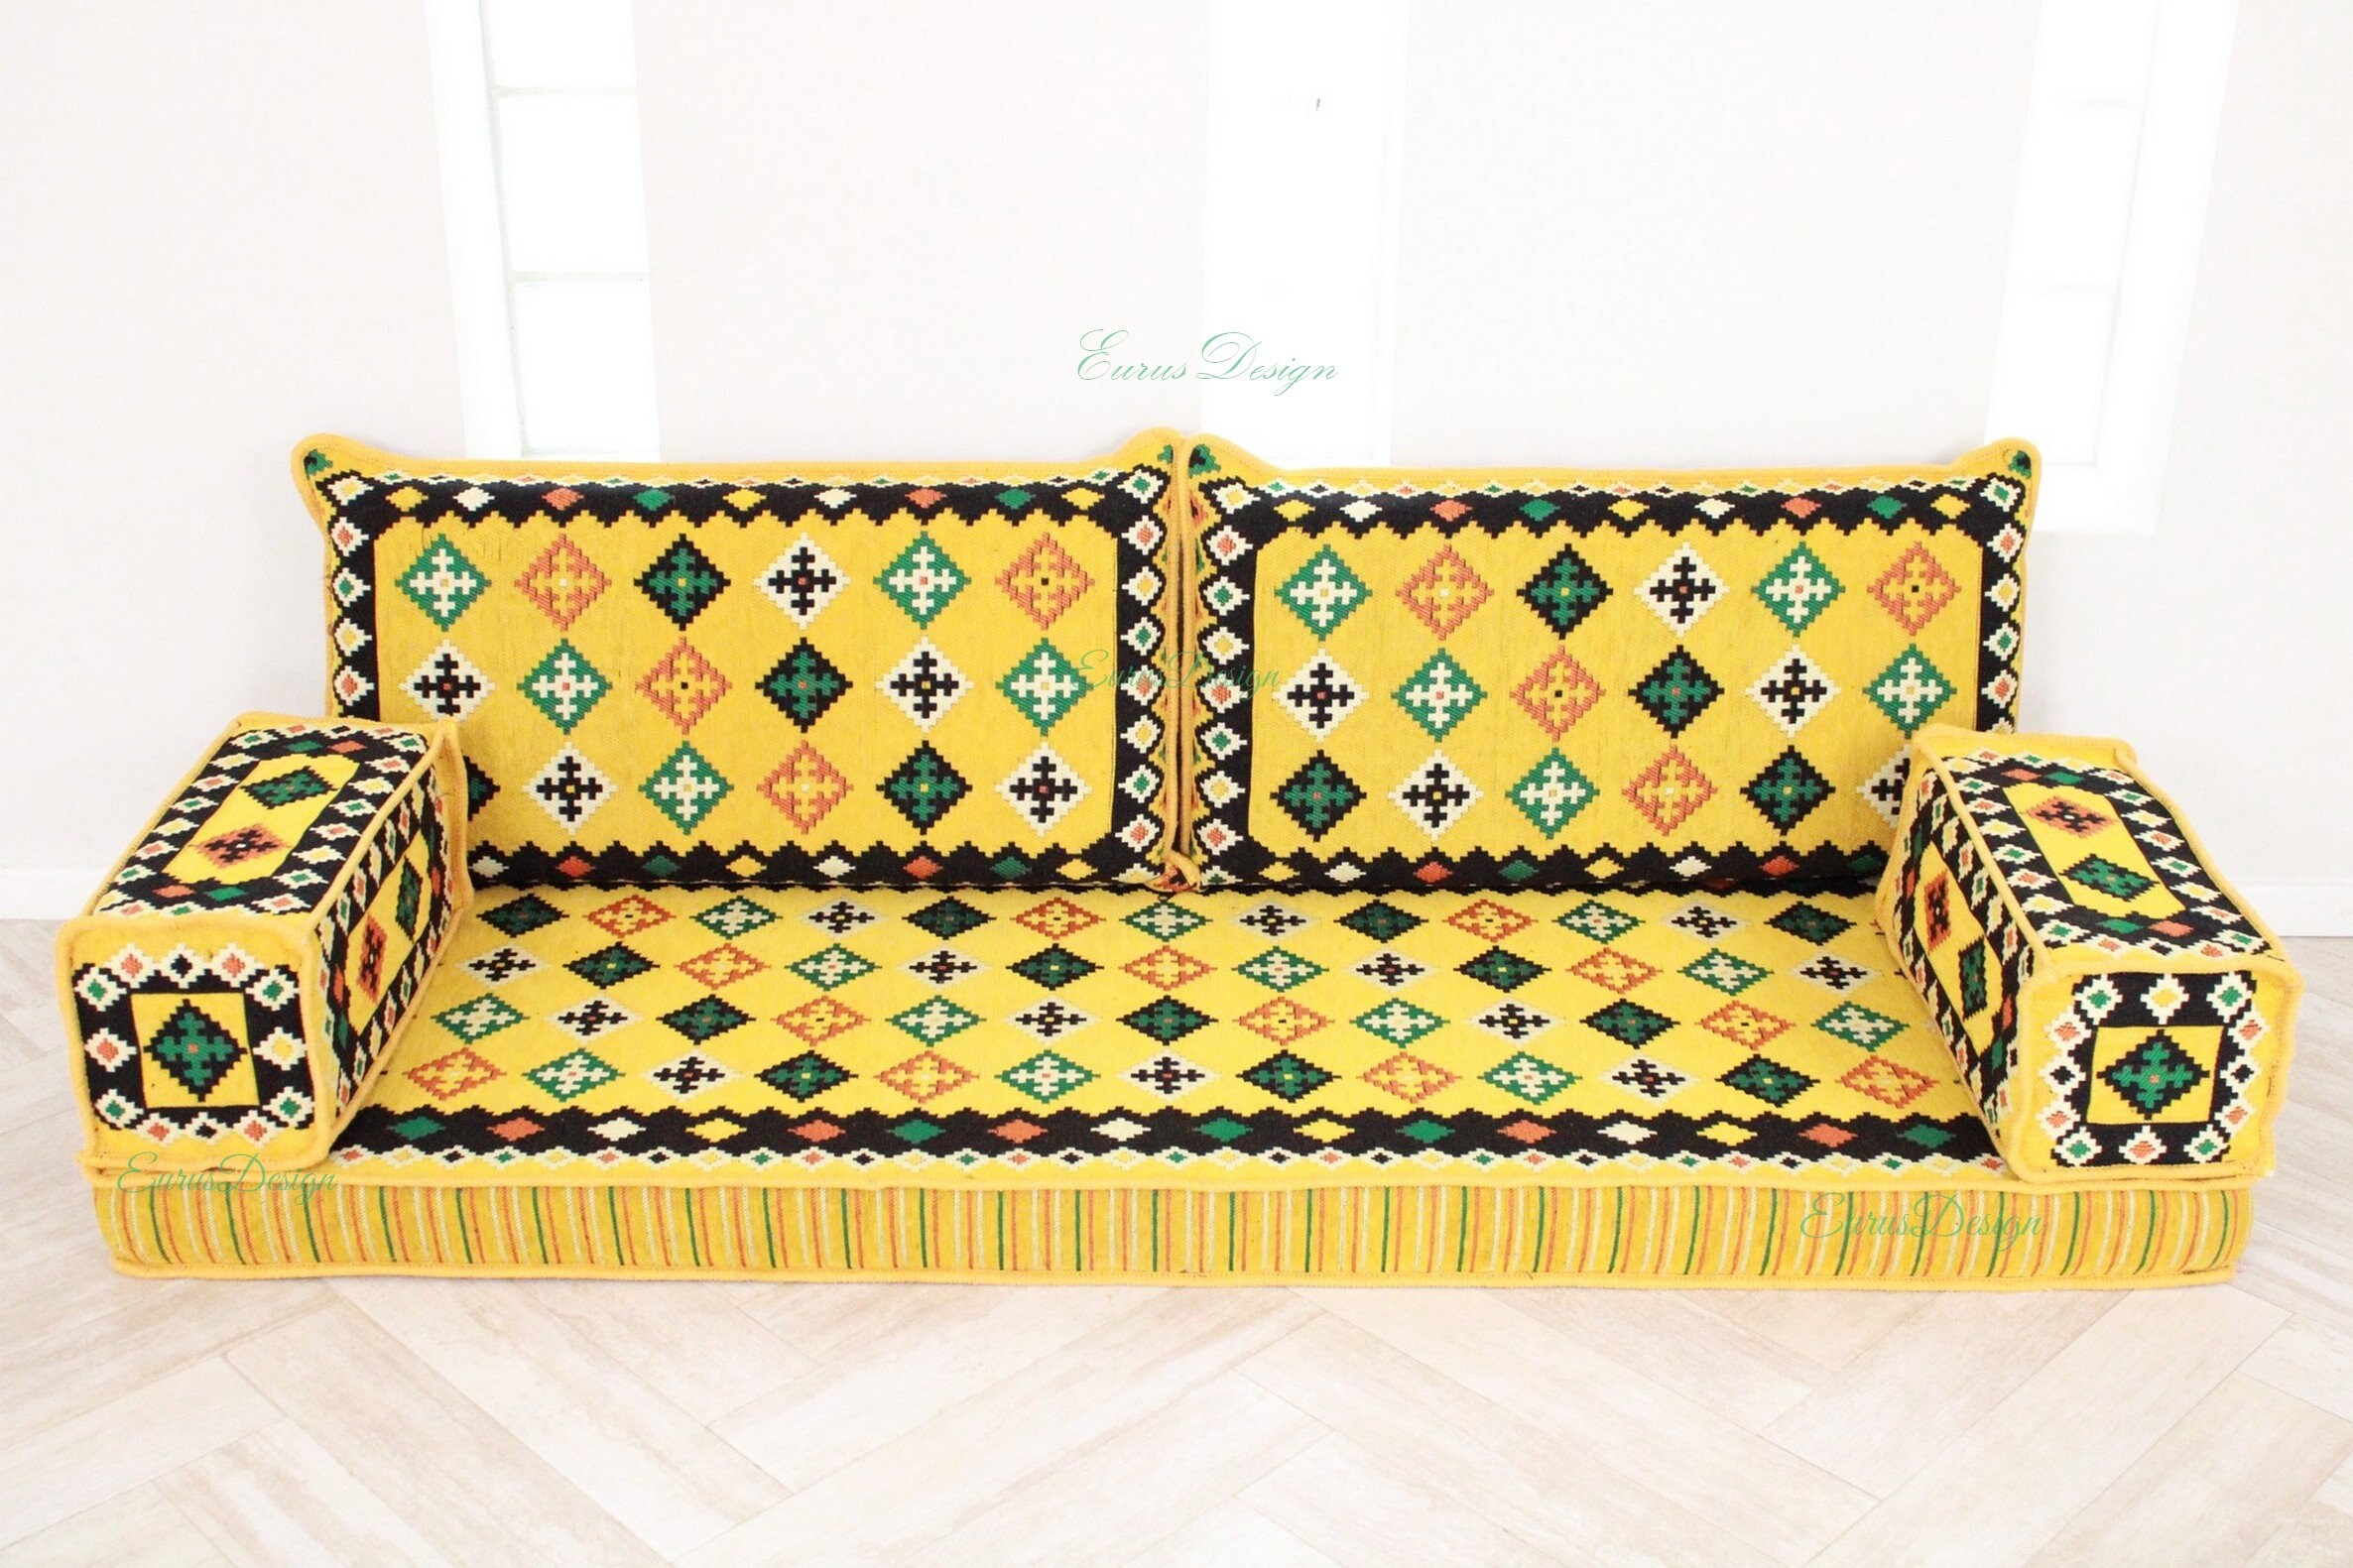 levenslang Cyberruimte Met bloed bevlekt Sofa Floor Couch Oriental Floor Seating Arabic Style Majlis - Etsy